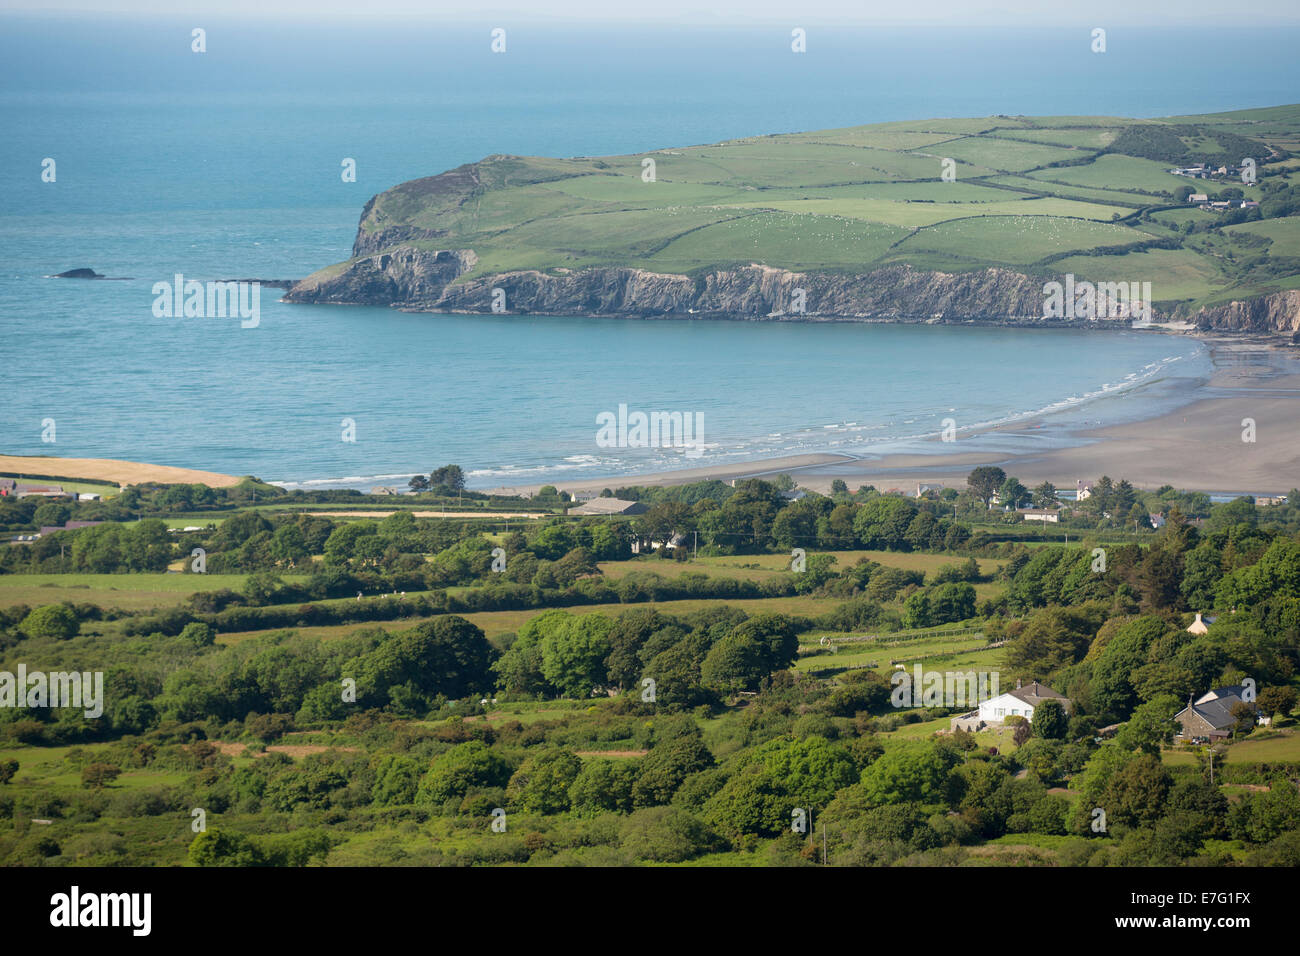 Les terres agricoles le long de la côte de Pembrokeshire, Pays de Galles Banque D'Images